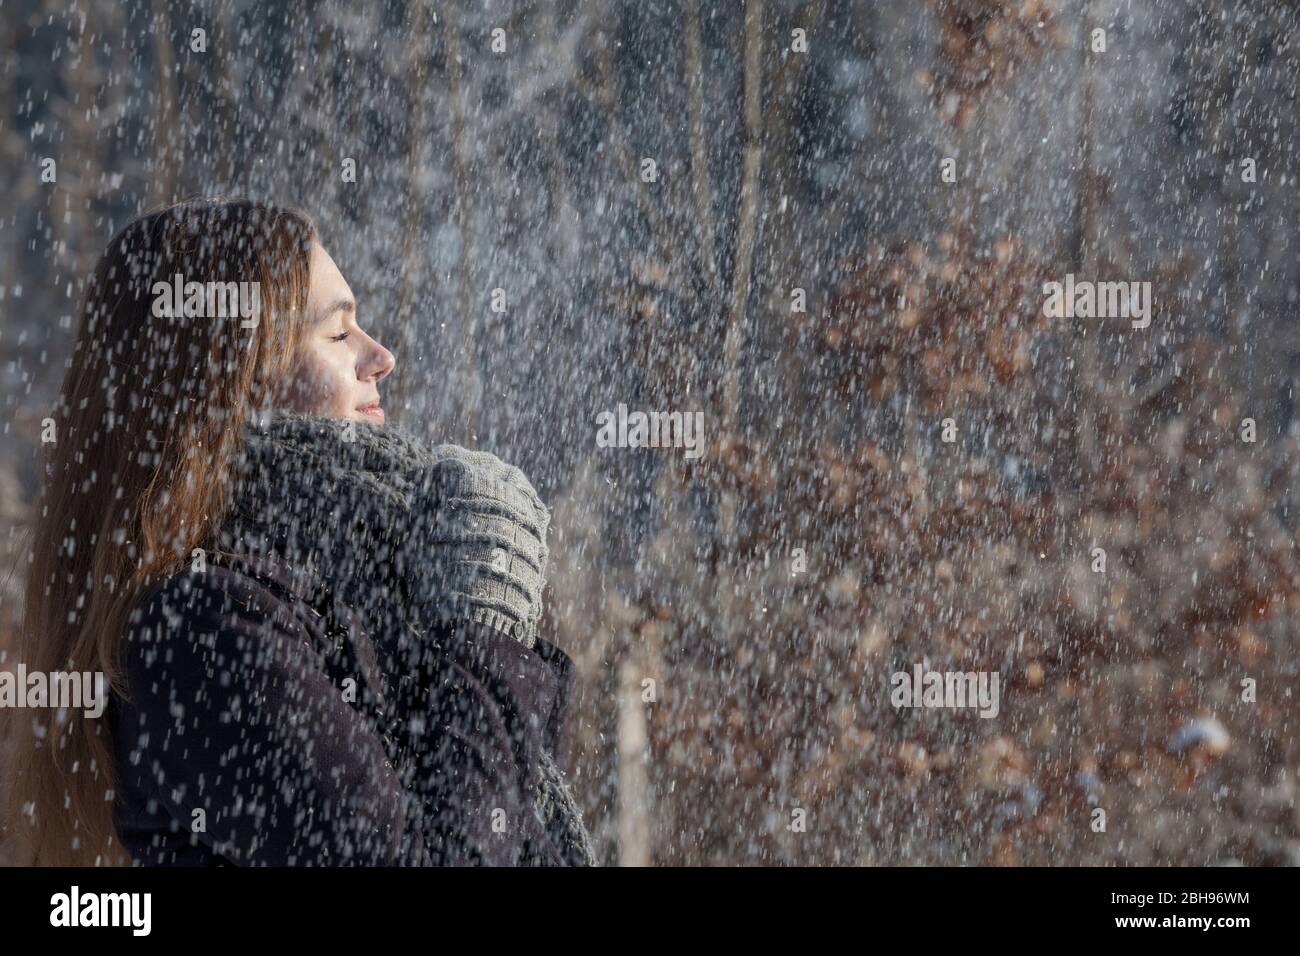 La joven disfruta con los ojos cerrados del sol en su cara y la nieve que cae, el pelo largo marrón, la ropa de invierno, bufanda y guantes Foto de stock